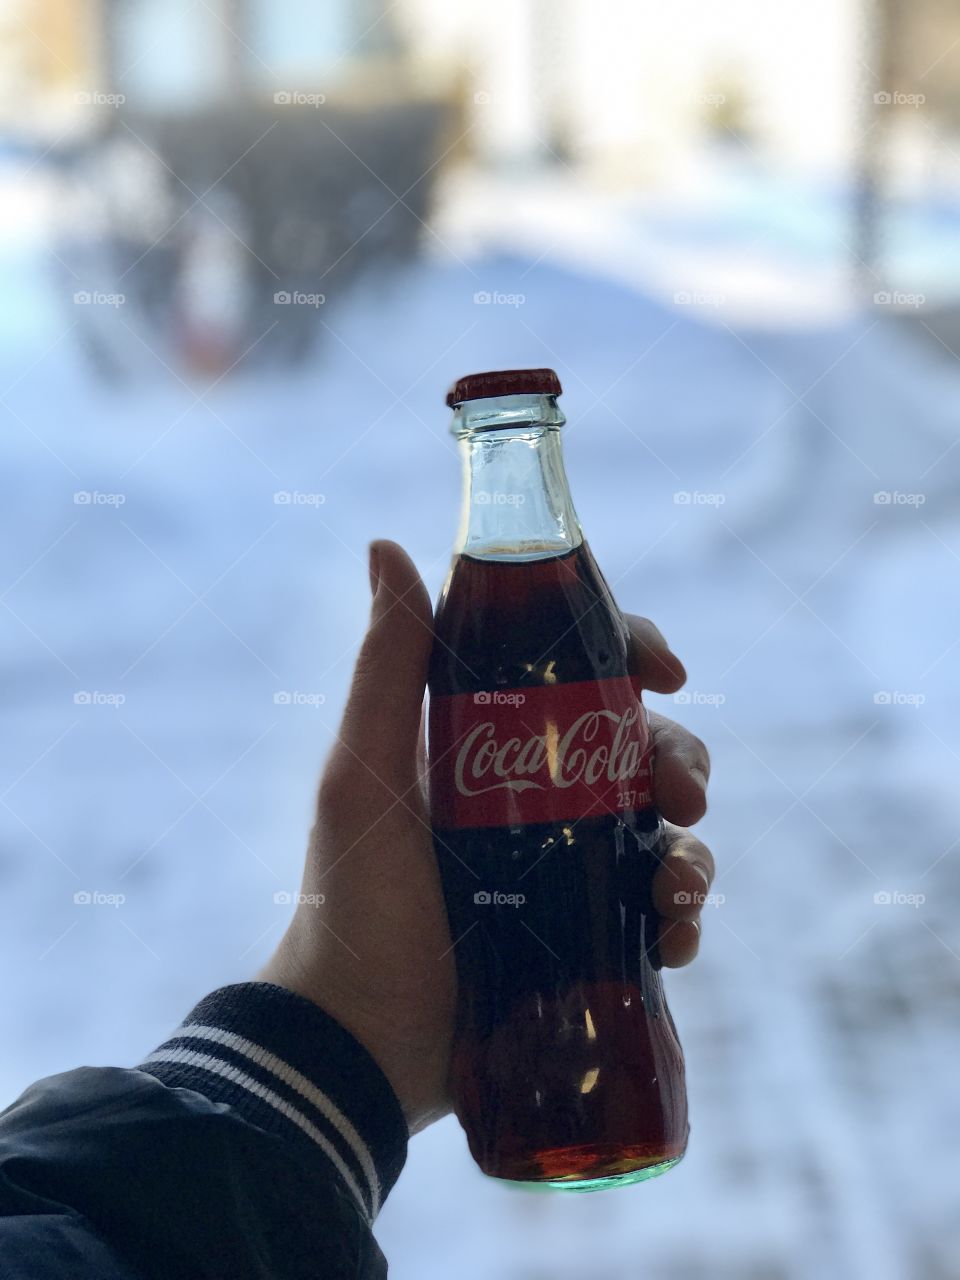 Grab a coke!